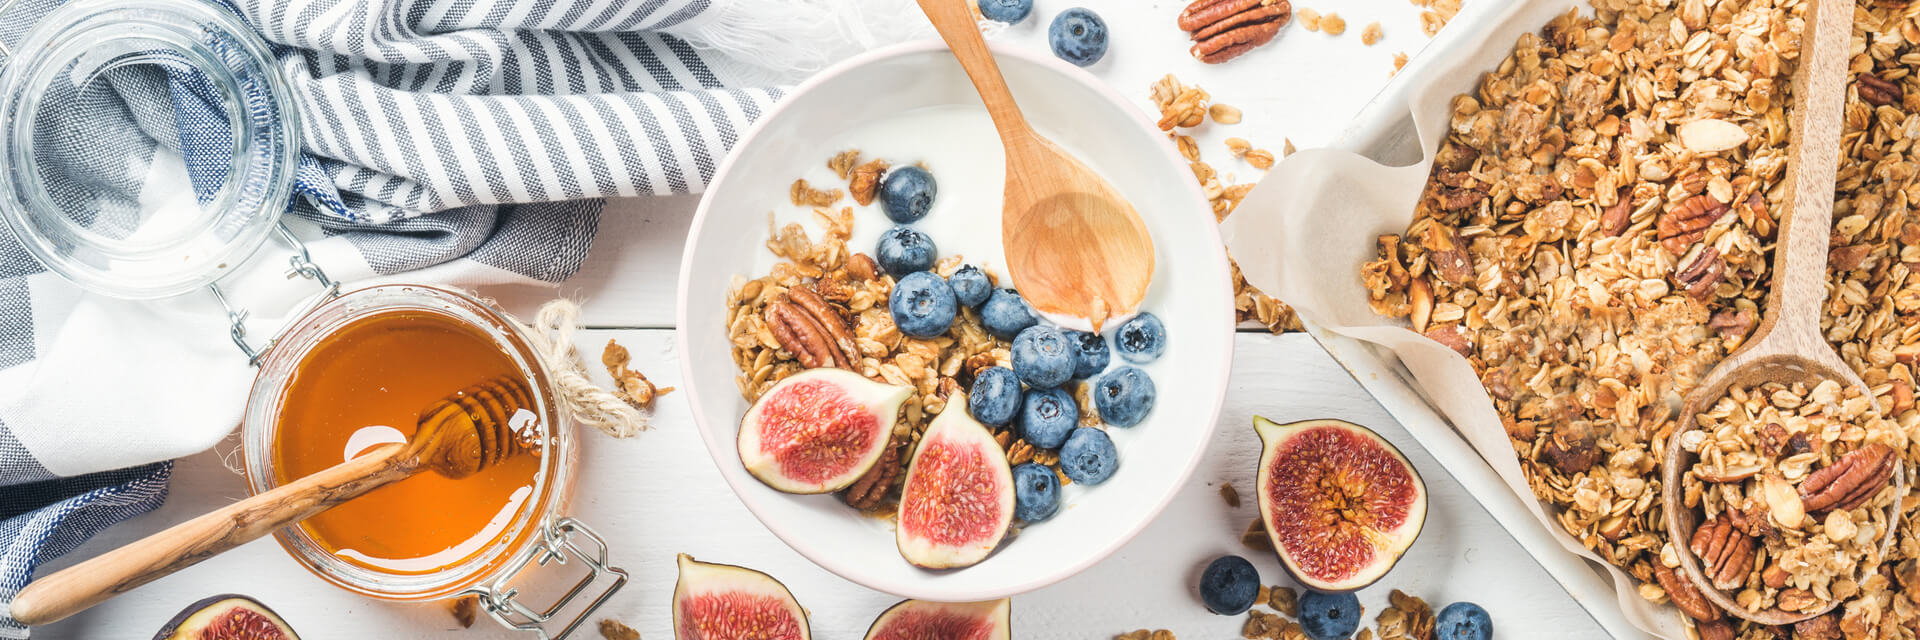 Ιδέες για ένα ισορροπημένο και υγιεινό πρωινό γεύμα για να ξεκινήσετε τη μέρα σας σωστά